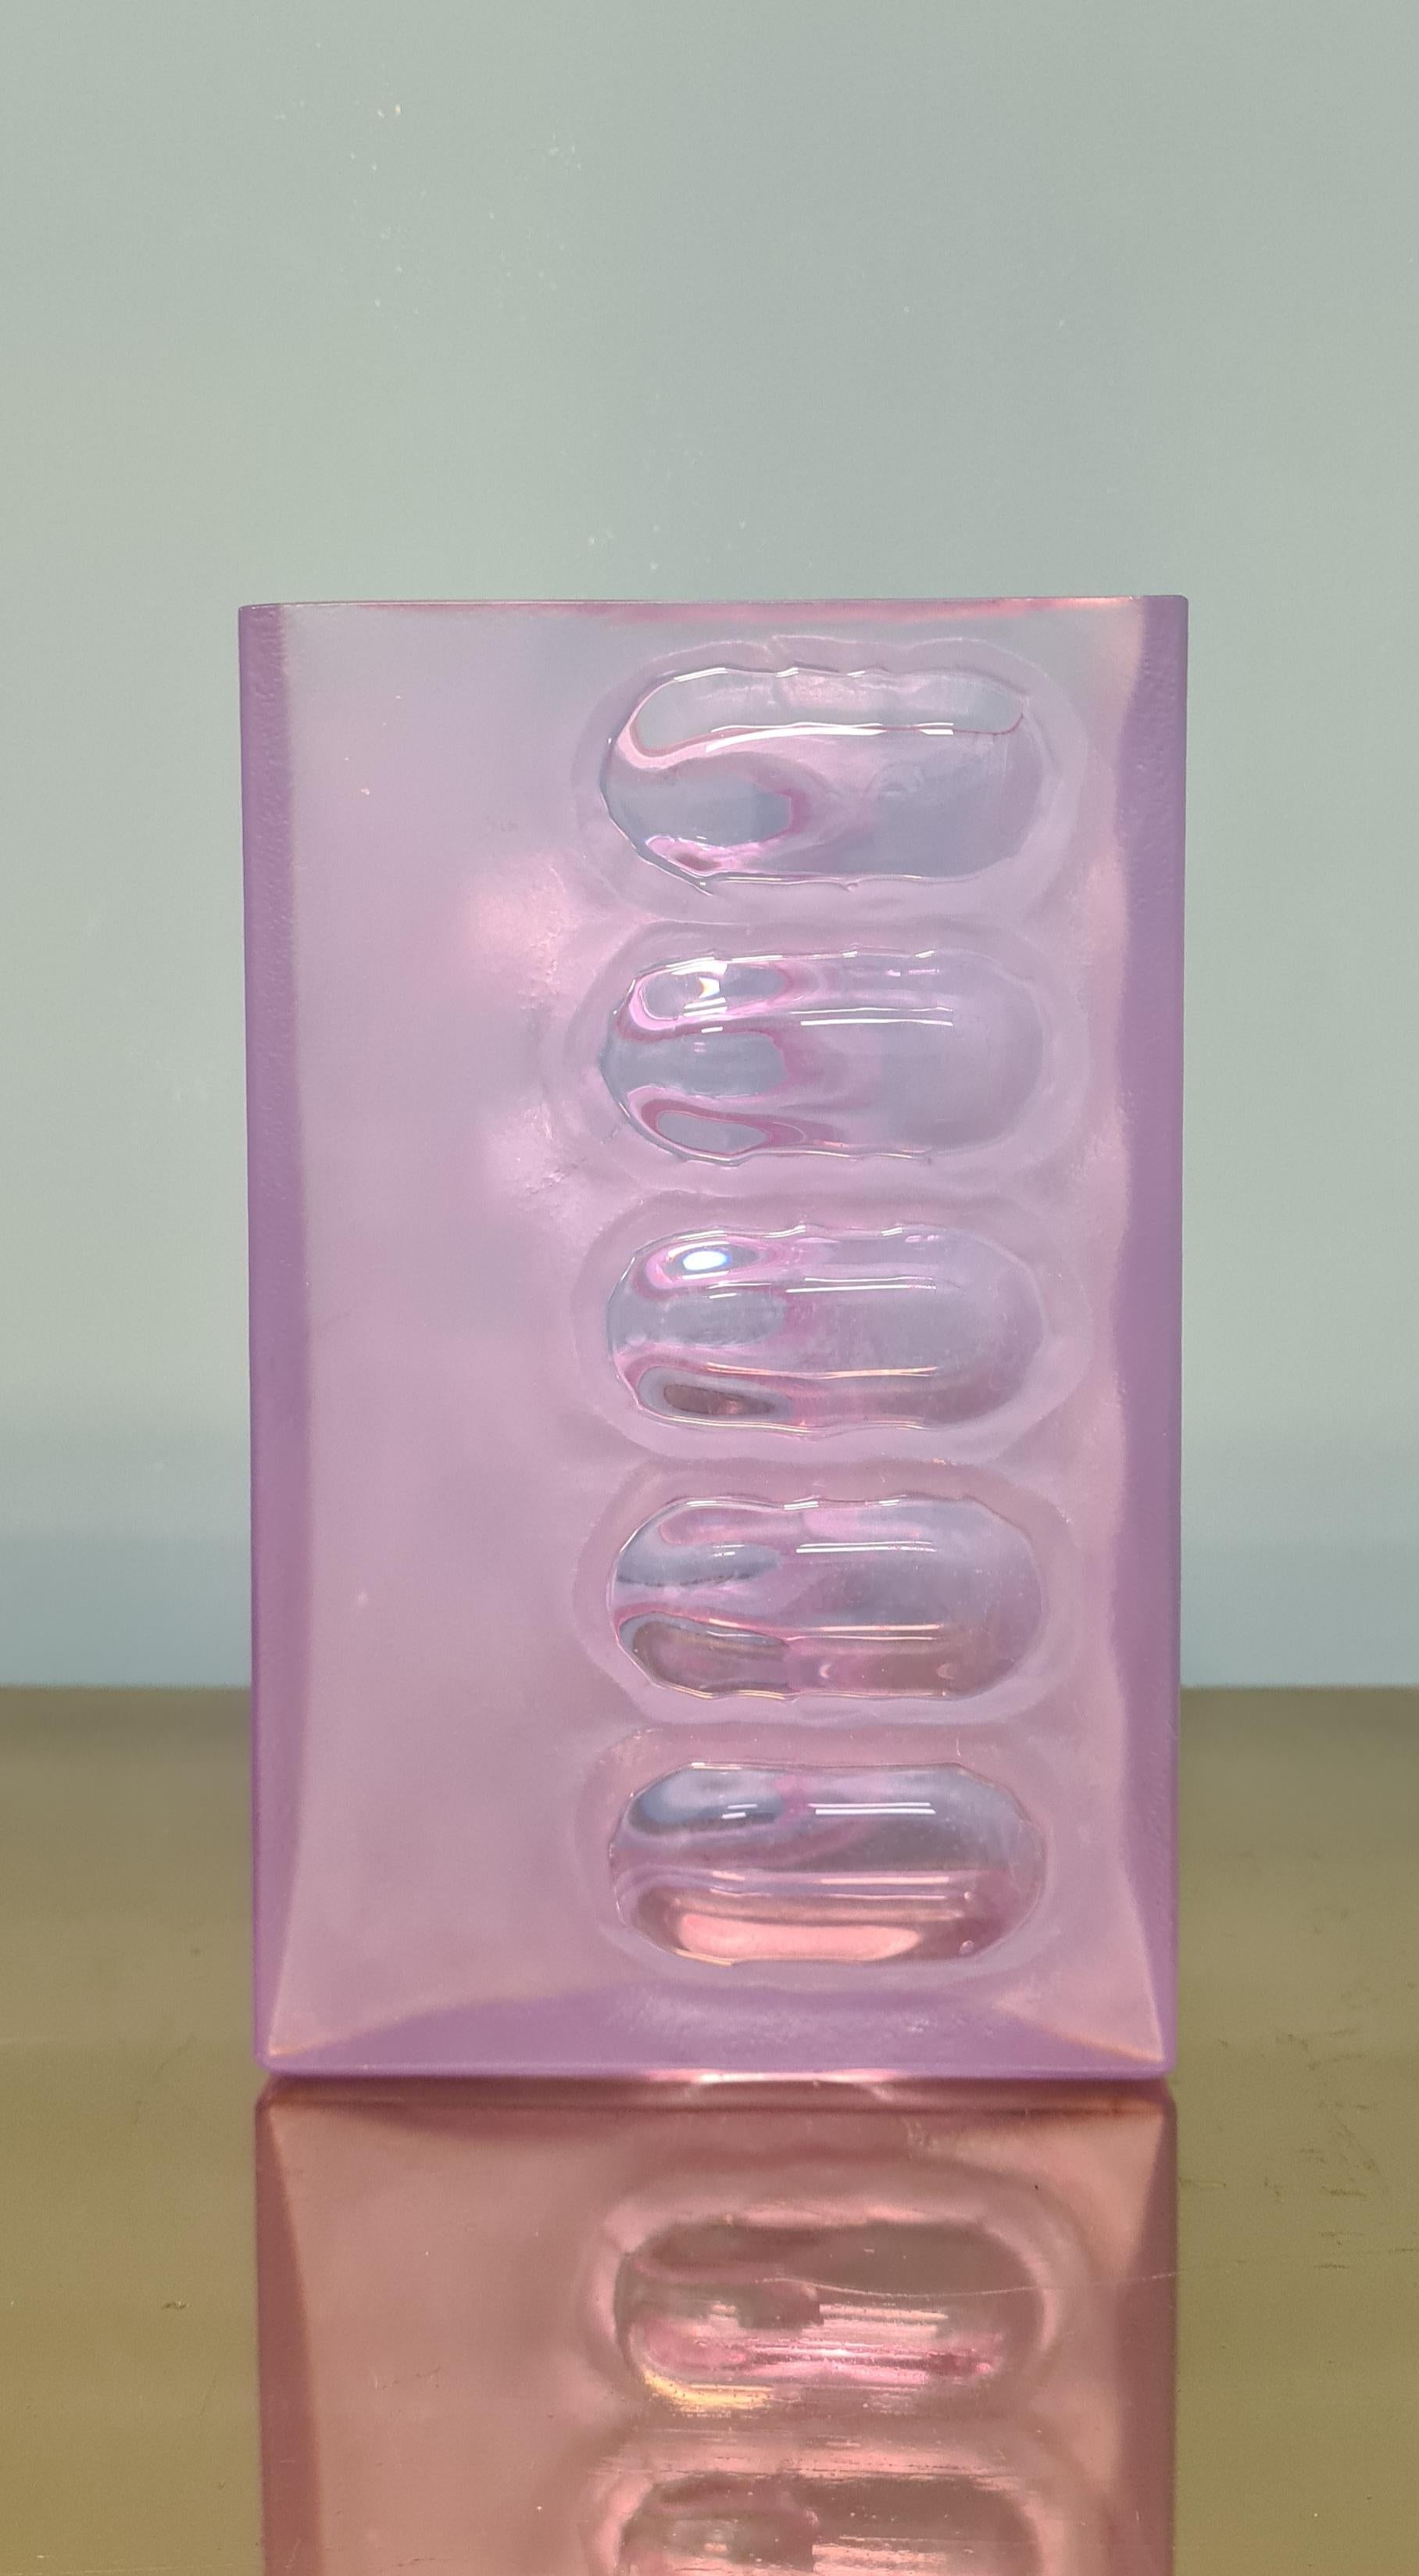 Vaso modello Frost di Arnolfo di cambio.

Il vaso è realizzato in alessandrite particolare cristallo dal colore lilla cangiante.

Presenta parti satinate e parti lucide.

Realizzato dall'illustre vetreria Toscana Arnolfo di Cambio leader nella